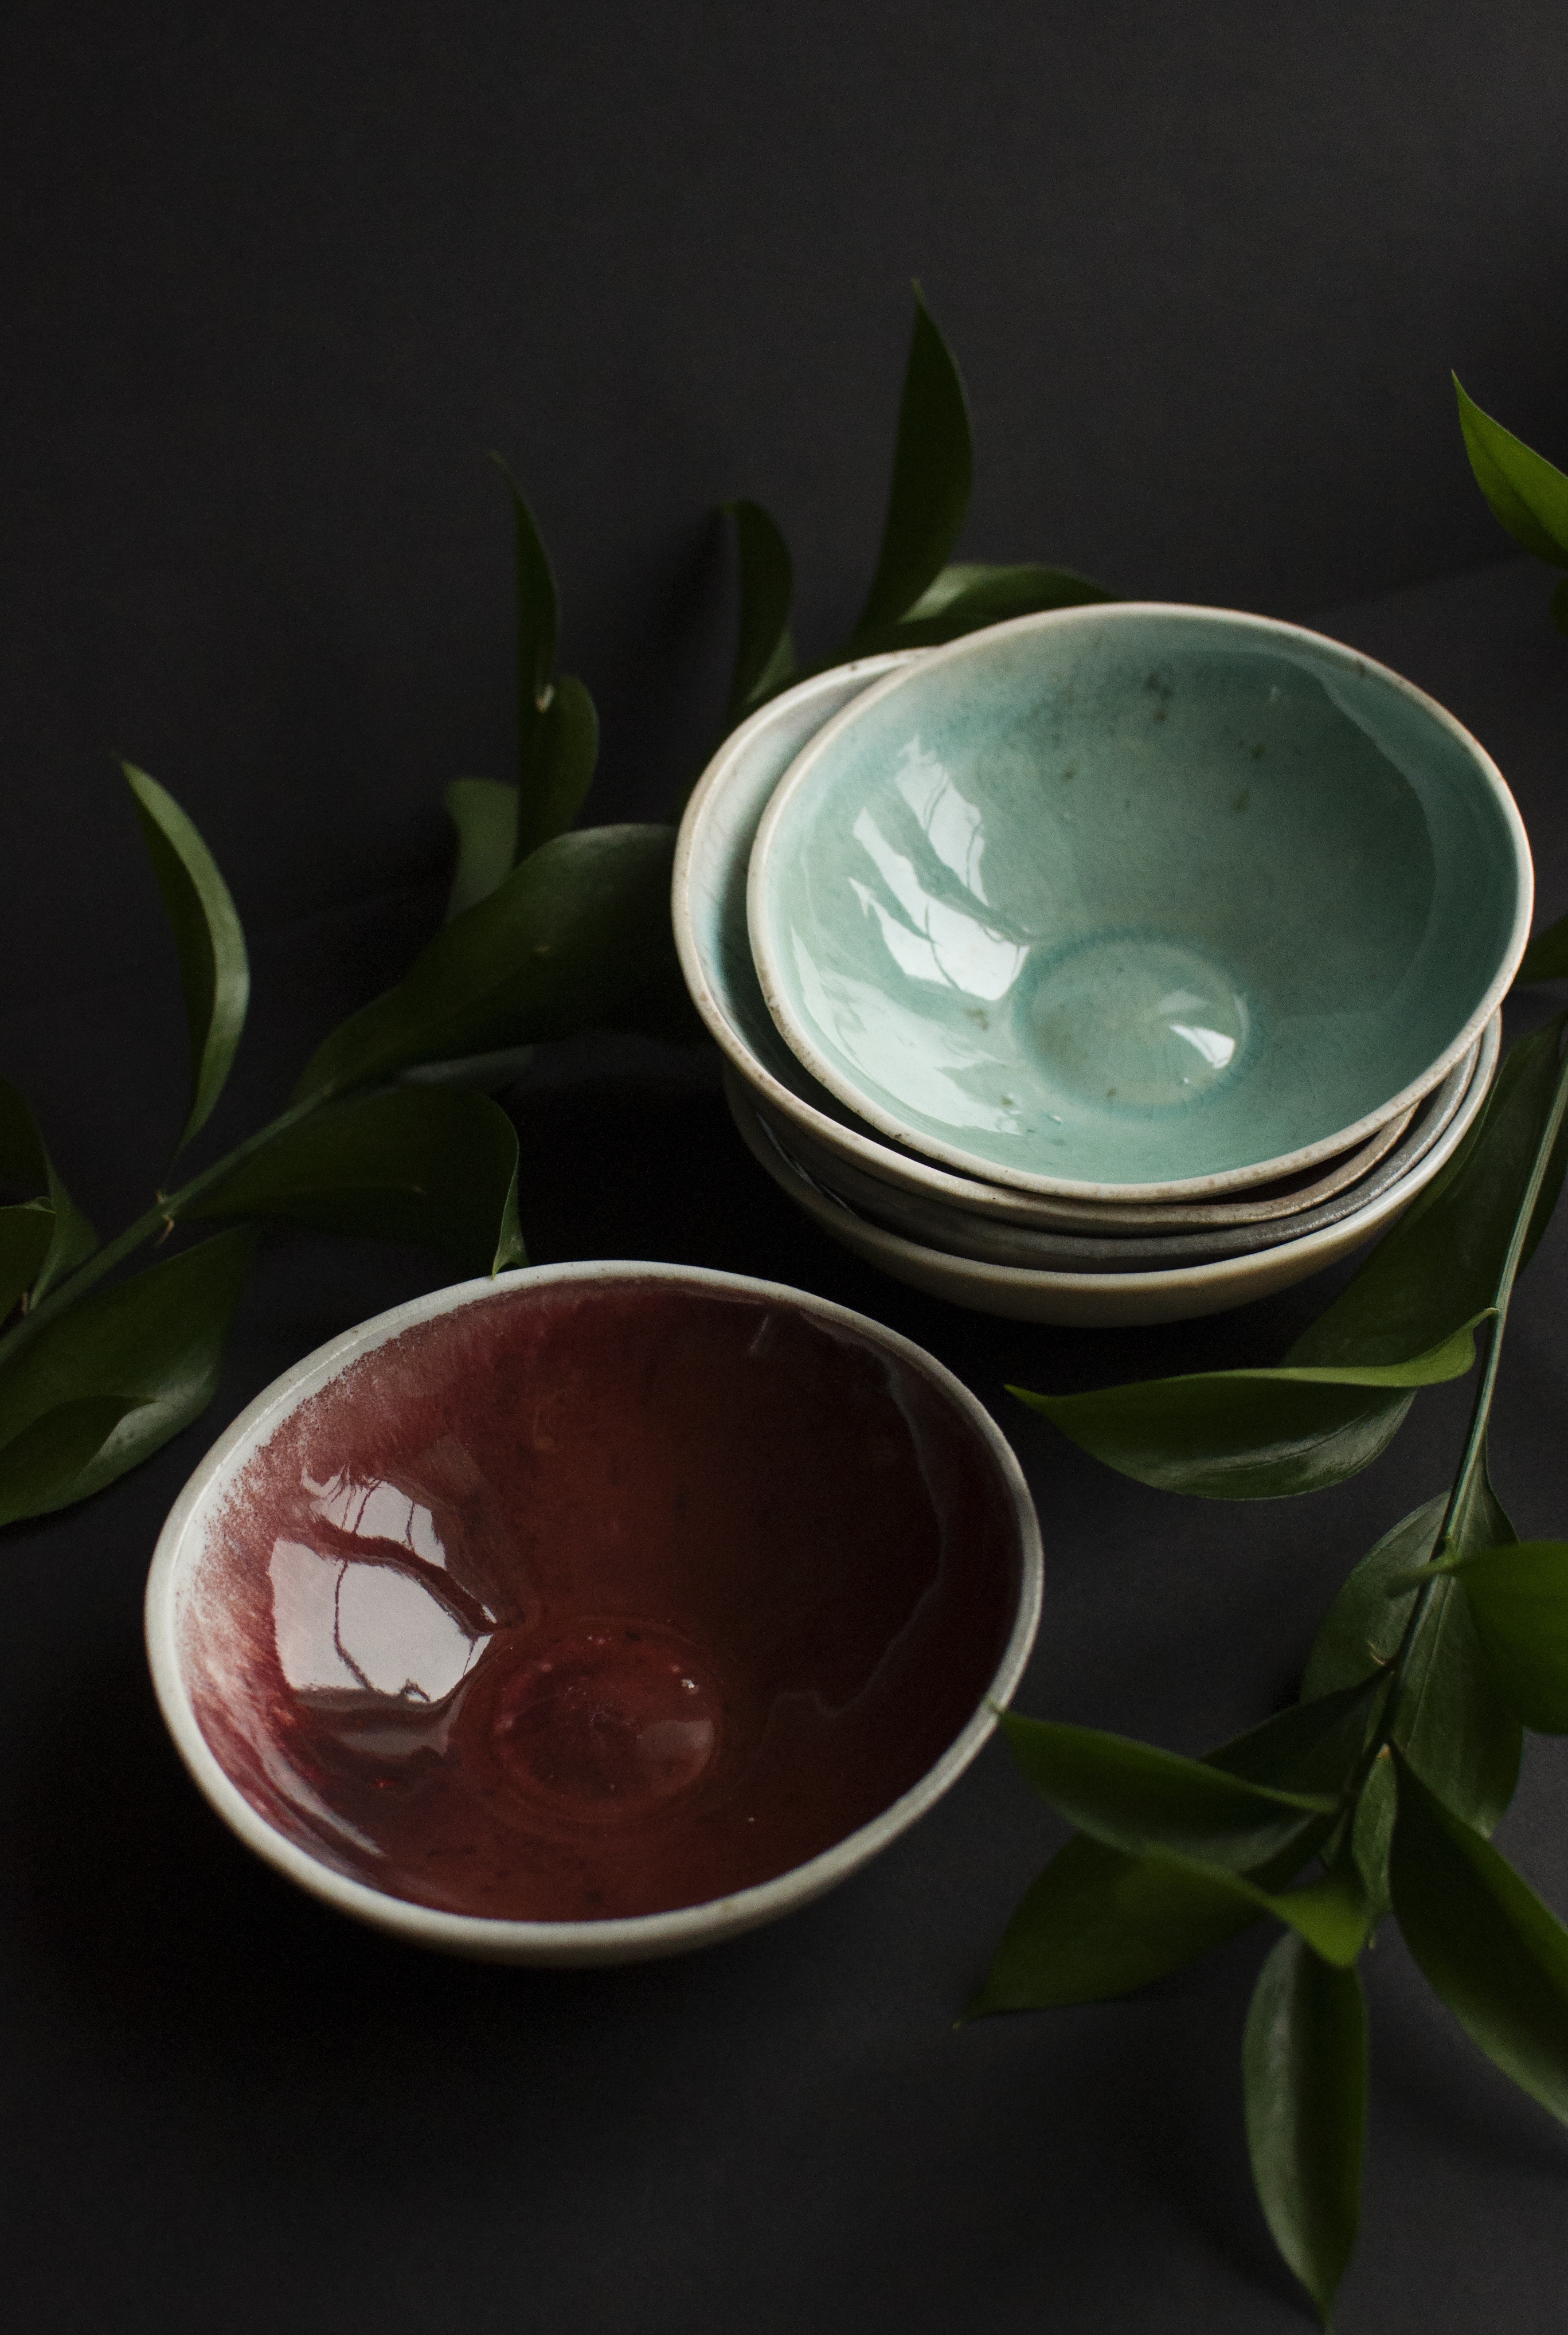 Wood fired bowls 2017 Porcelain